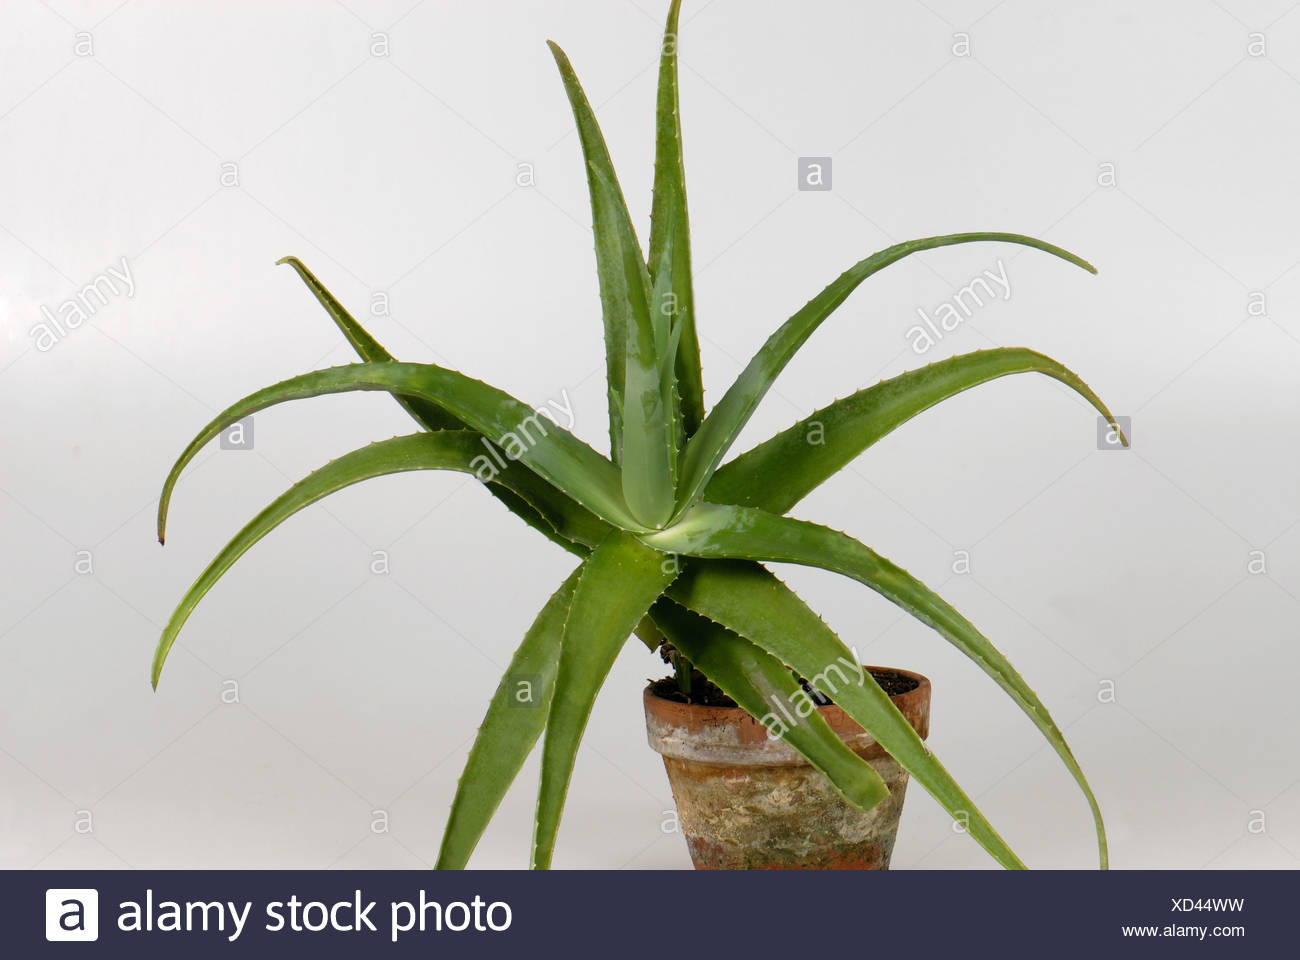 Aloe Vera Topfpflanze Mit Fleischigen Saftigen Blatter Stockfotografie Alamy